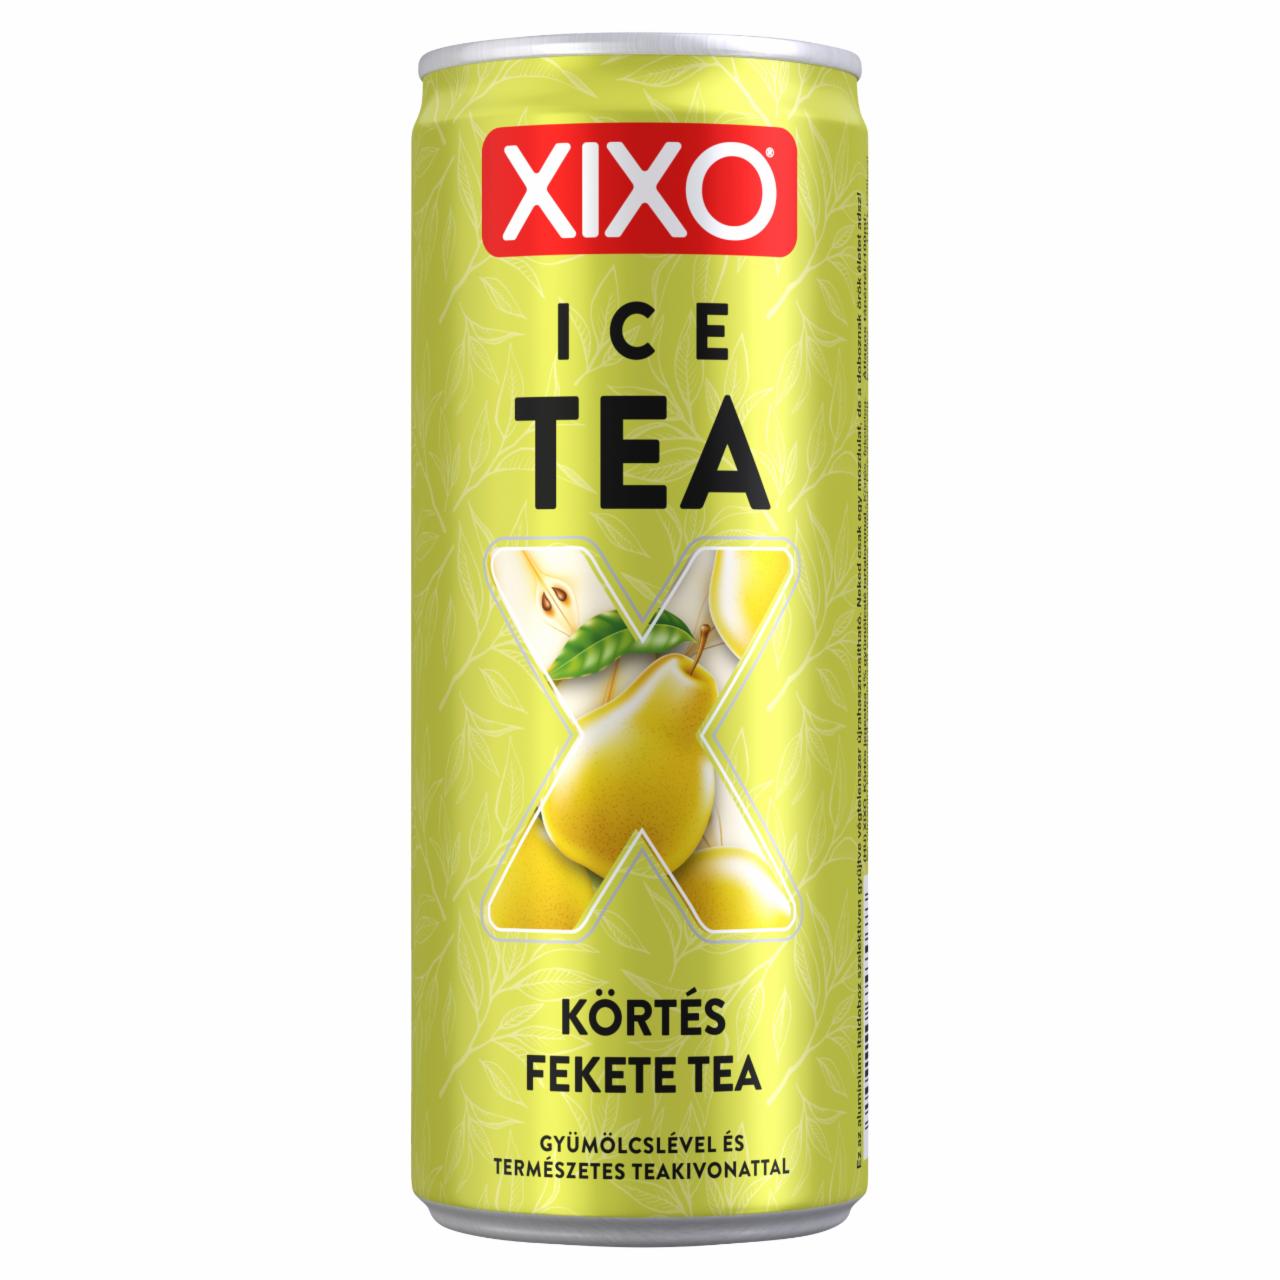 Képek - XIXO Ice Tea körtés fekete tea 250 ml